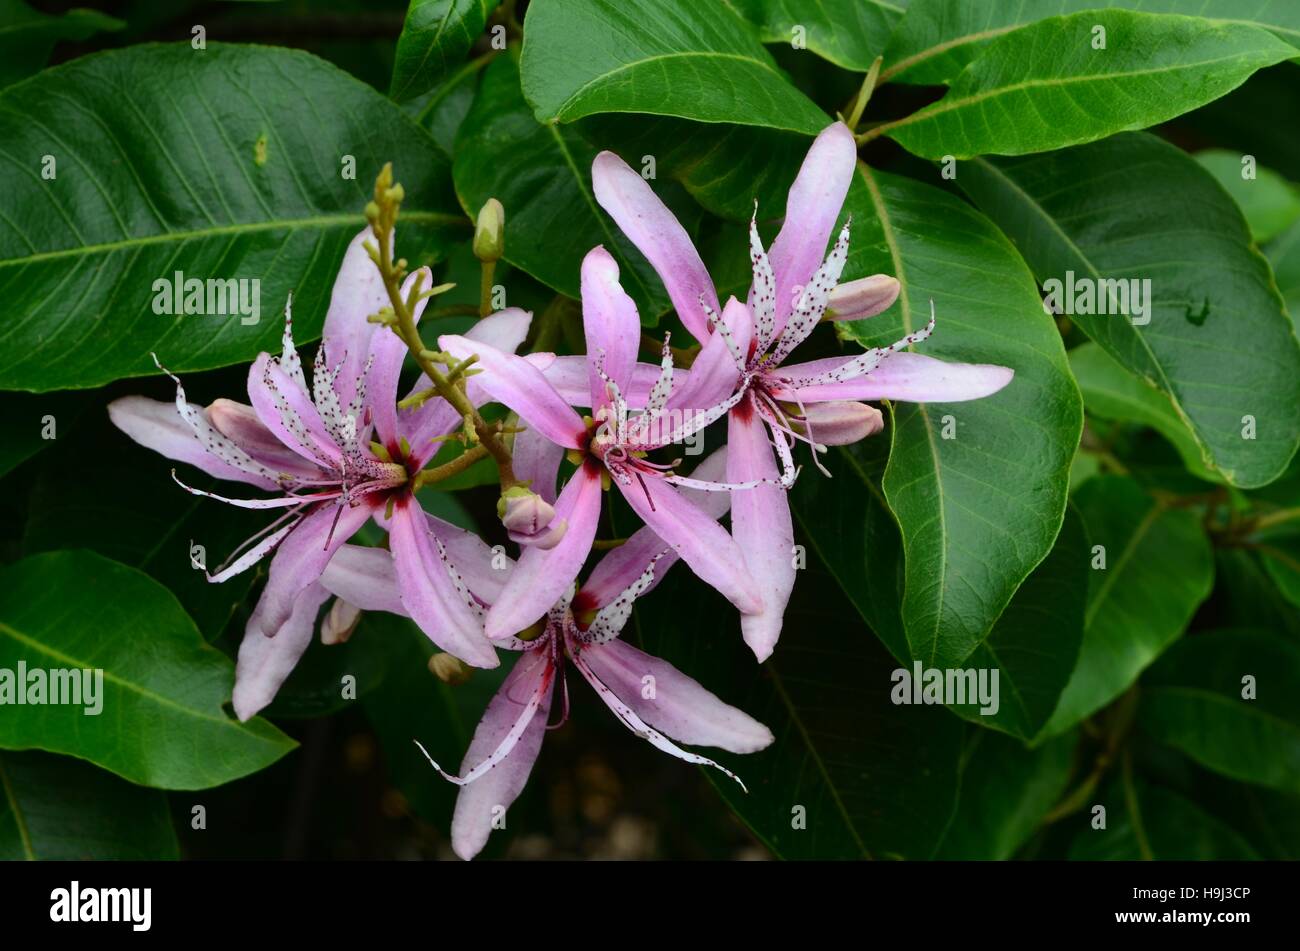 Cape Castagna - bianco e malva con dei fiori viola le ghiandole su petali di colore bianco. Close-up di fiore con foglie di colore verde scuro. Piccolo albero sempreverde hardy tree. Foto Stock